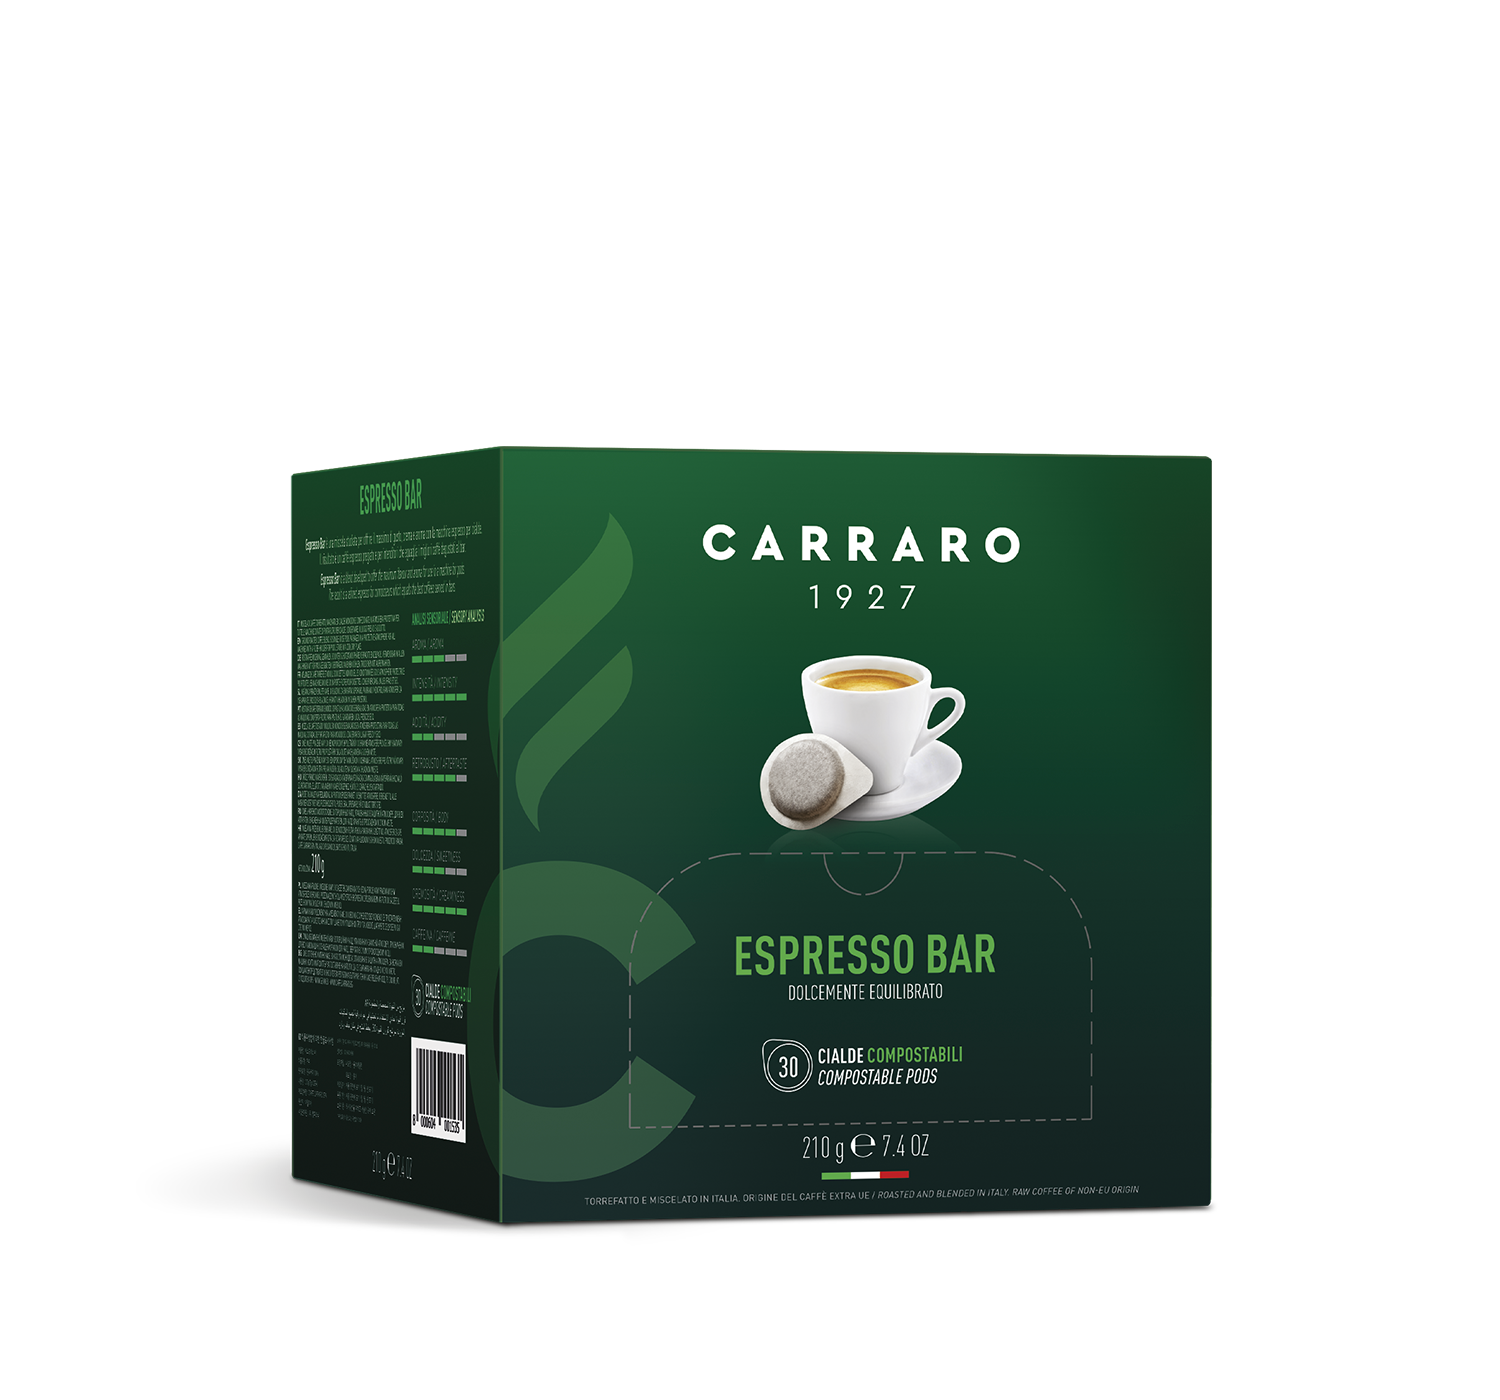 Retail - Espresso bar – 30 pods 7 g - Shop online Caffè Carraro